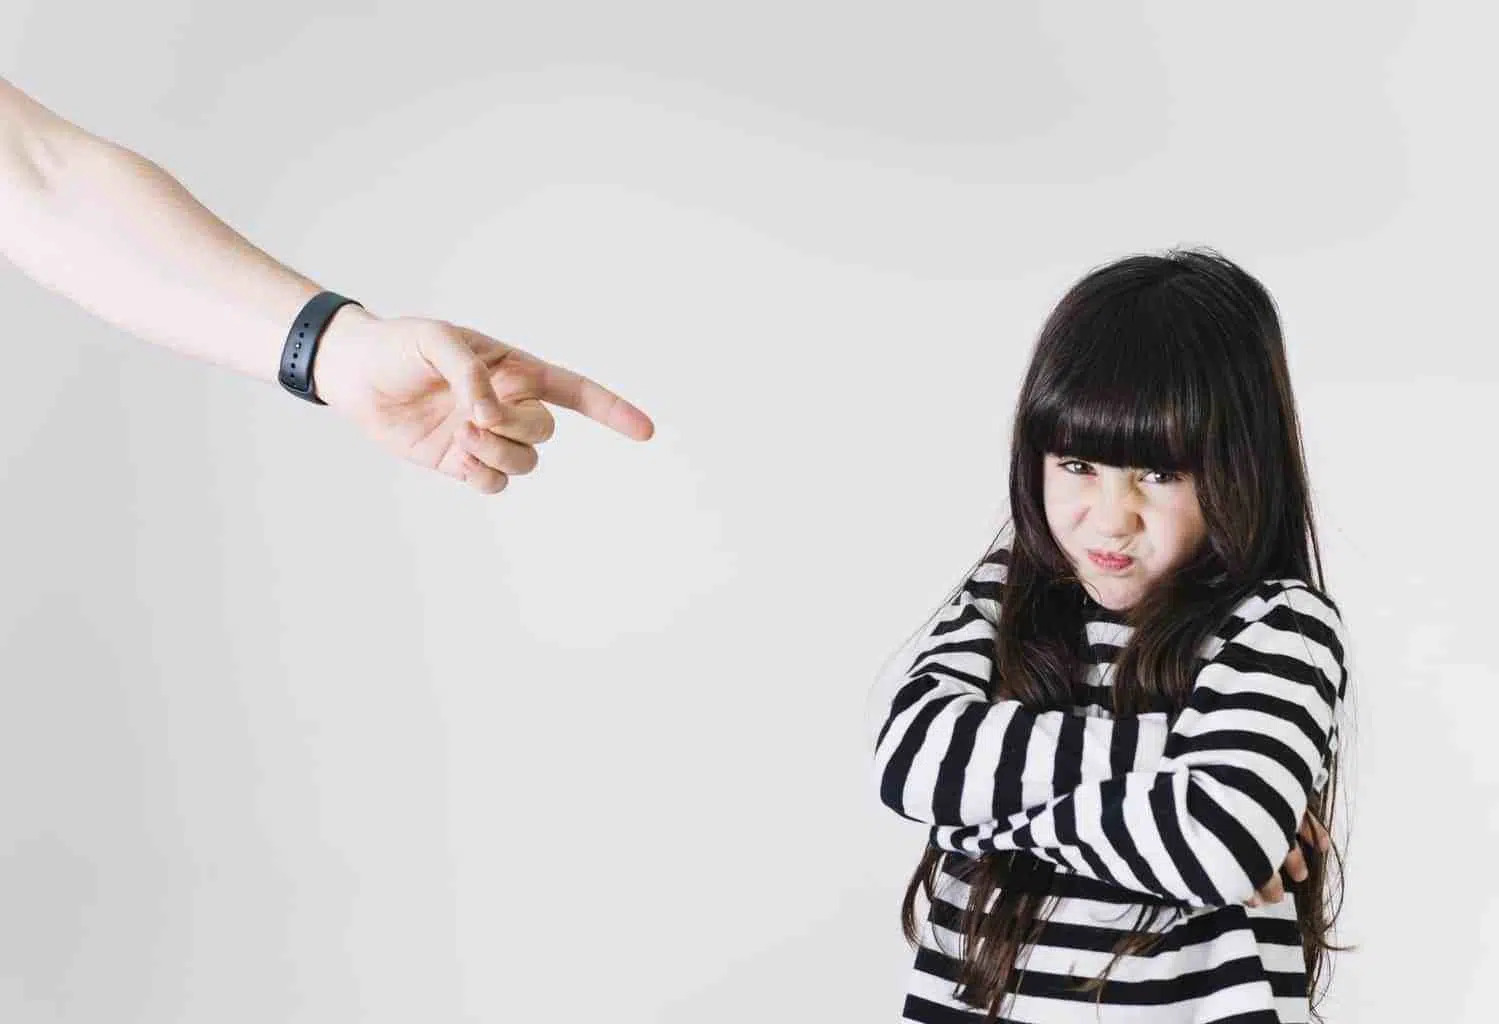 La hét hoặc đánh mắng khi trẻ tức giận có thể gây ra những phản ứng tiêu cực